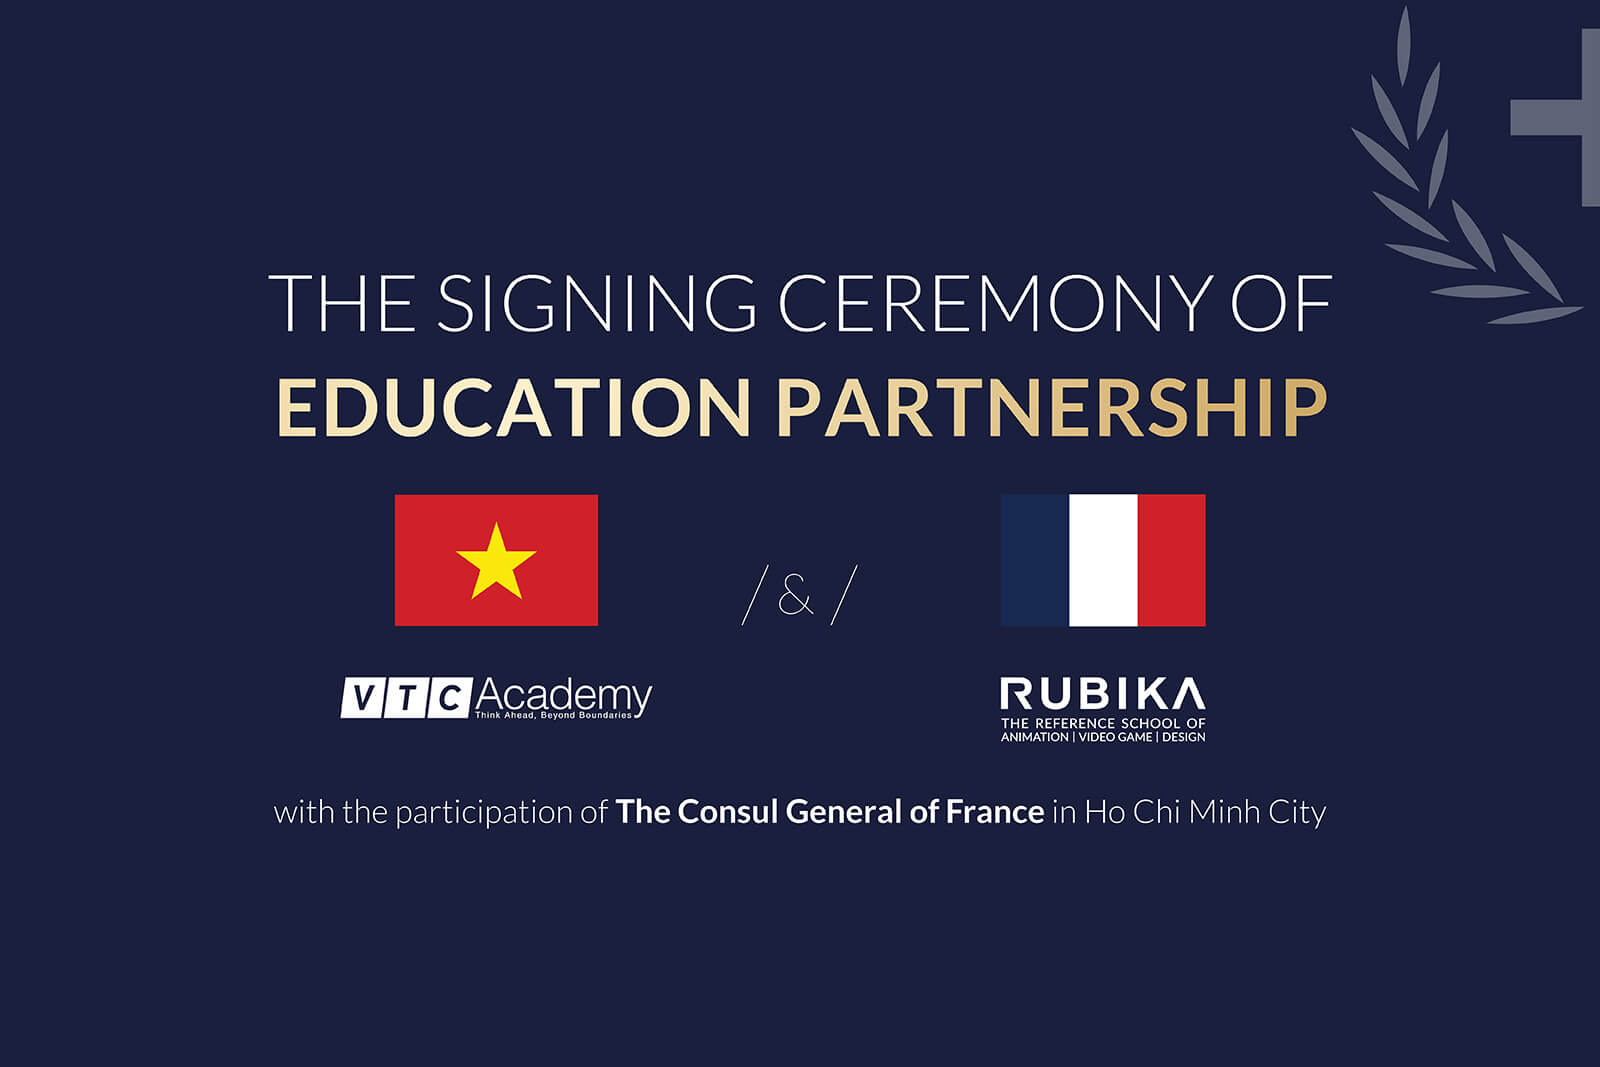 Lễ ký kết hợp tác giáo dục giữa VTC Academy và RUBIKA (Pháp)